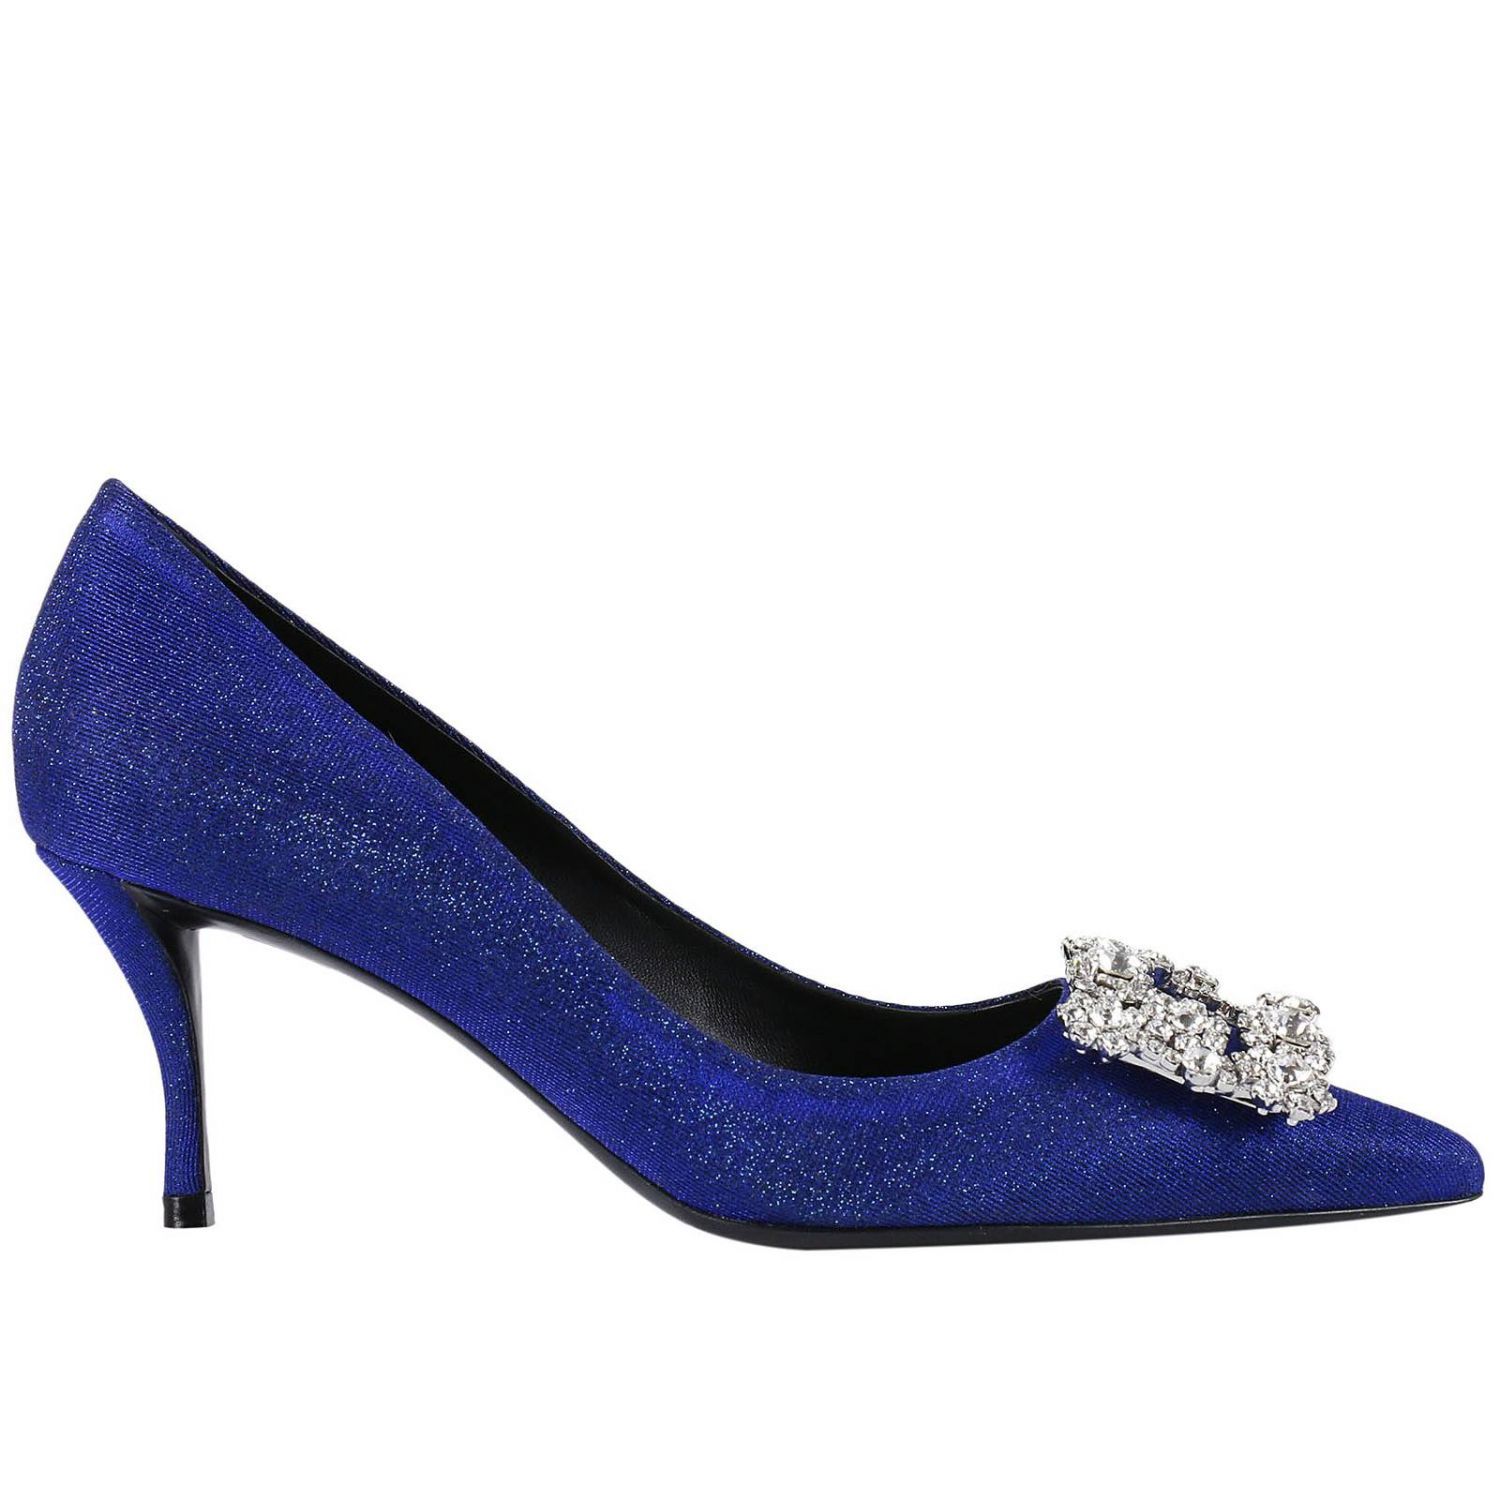 Roger Vivier - Pumps Shoes Women Roger Vivier - blue, Women's High ...